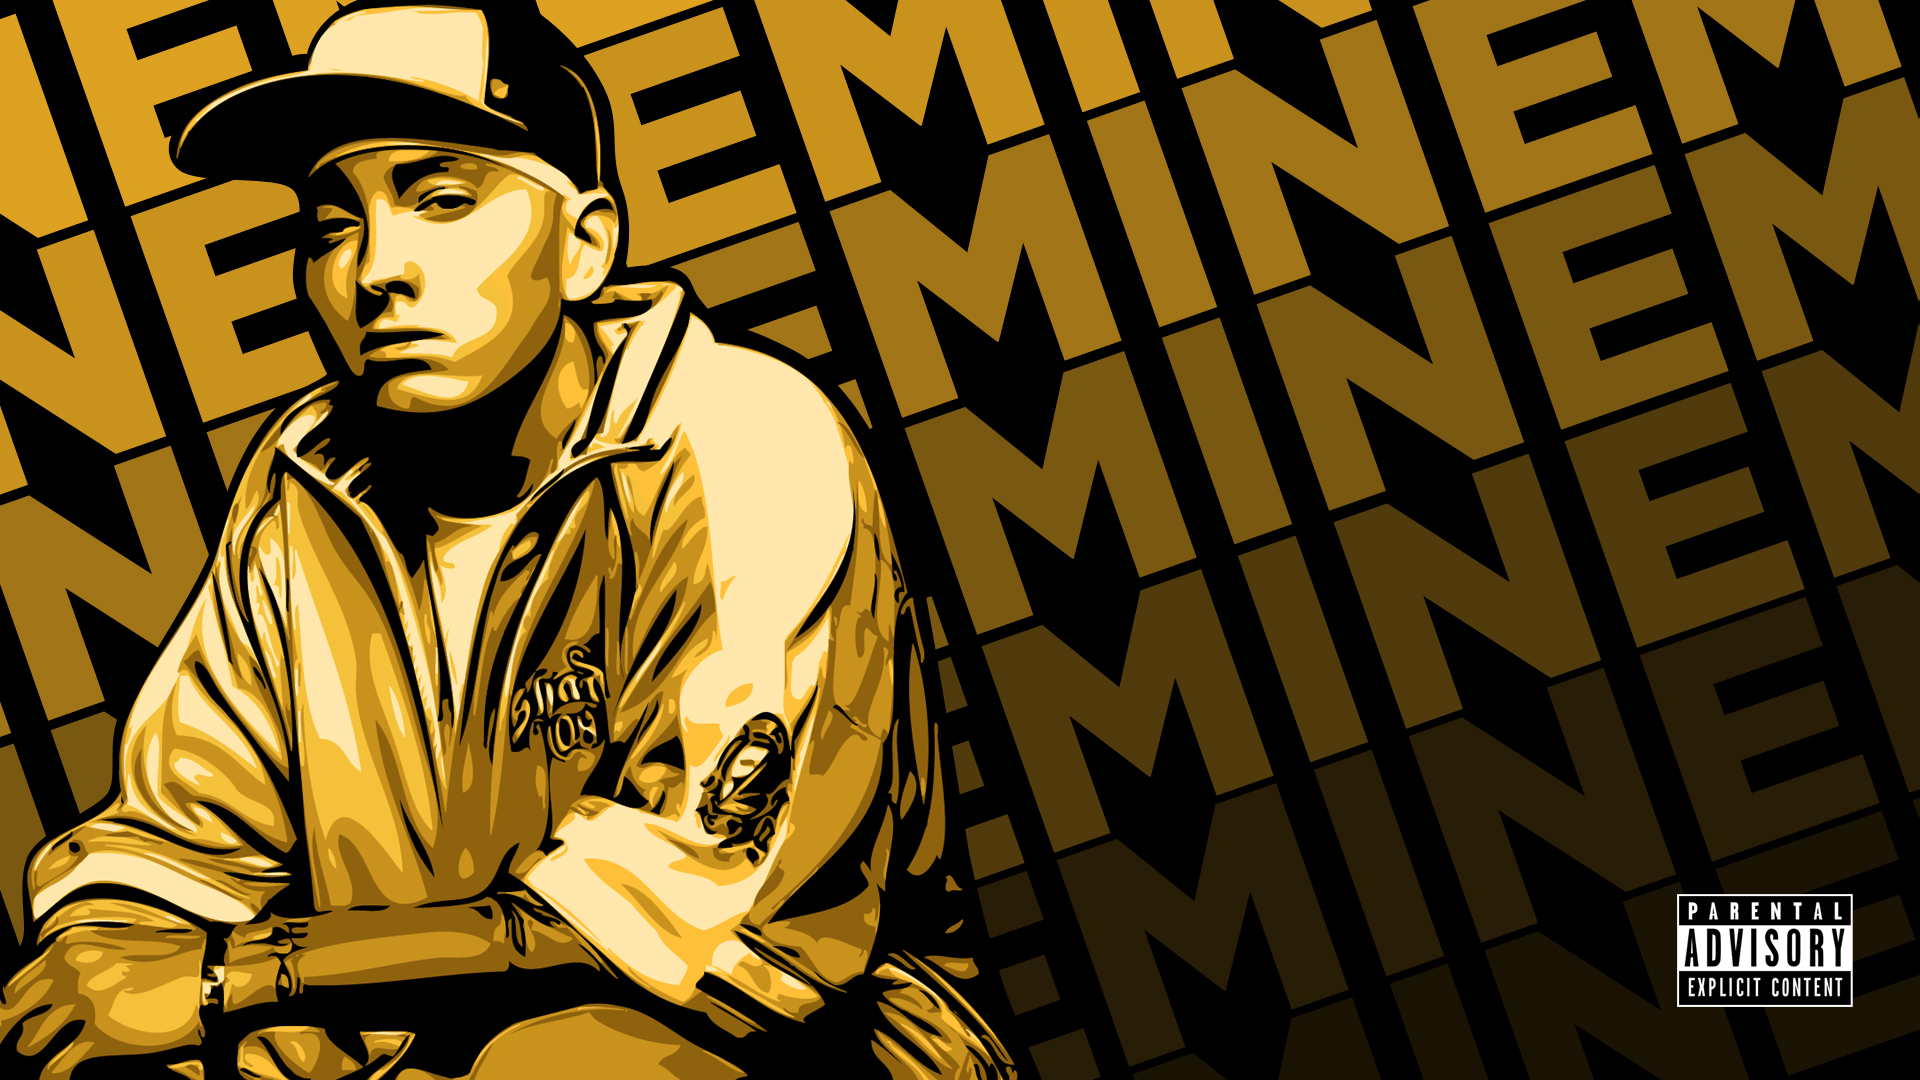 Eminem Wallpaper 2011 by iNicKeoN on DeviantArt